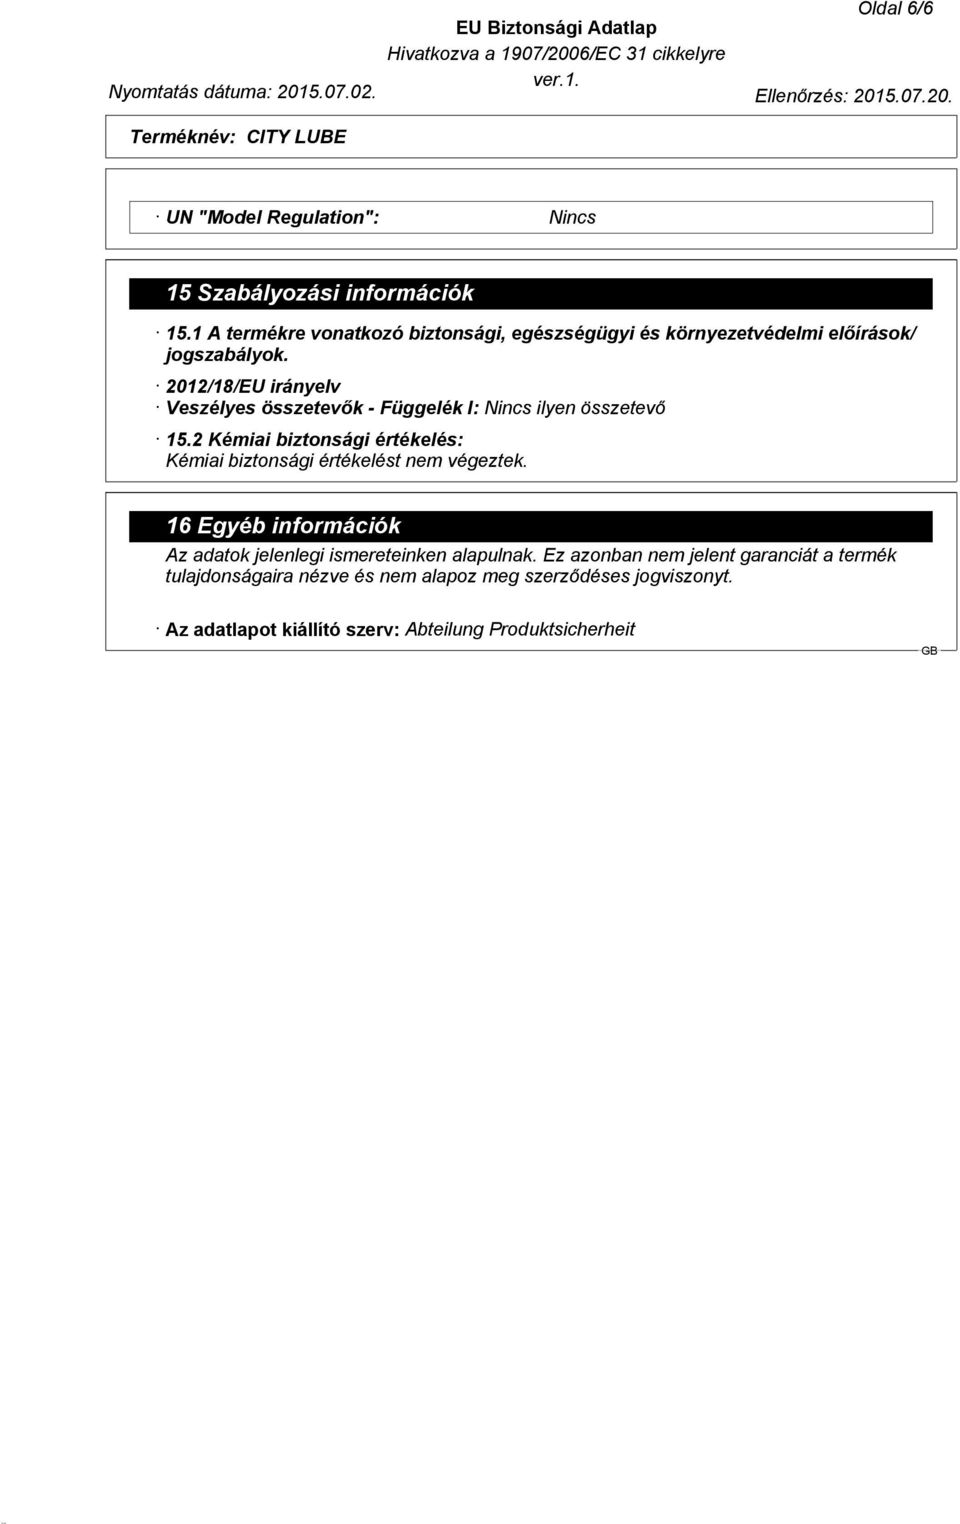 2012/18/EU irányelv Veszélyes összetevők - Függelék I: Nincs ilyen összetevő 15.